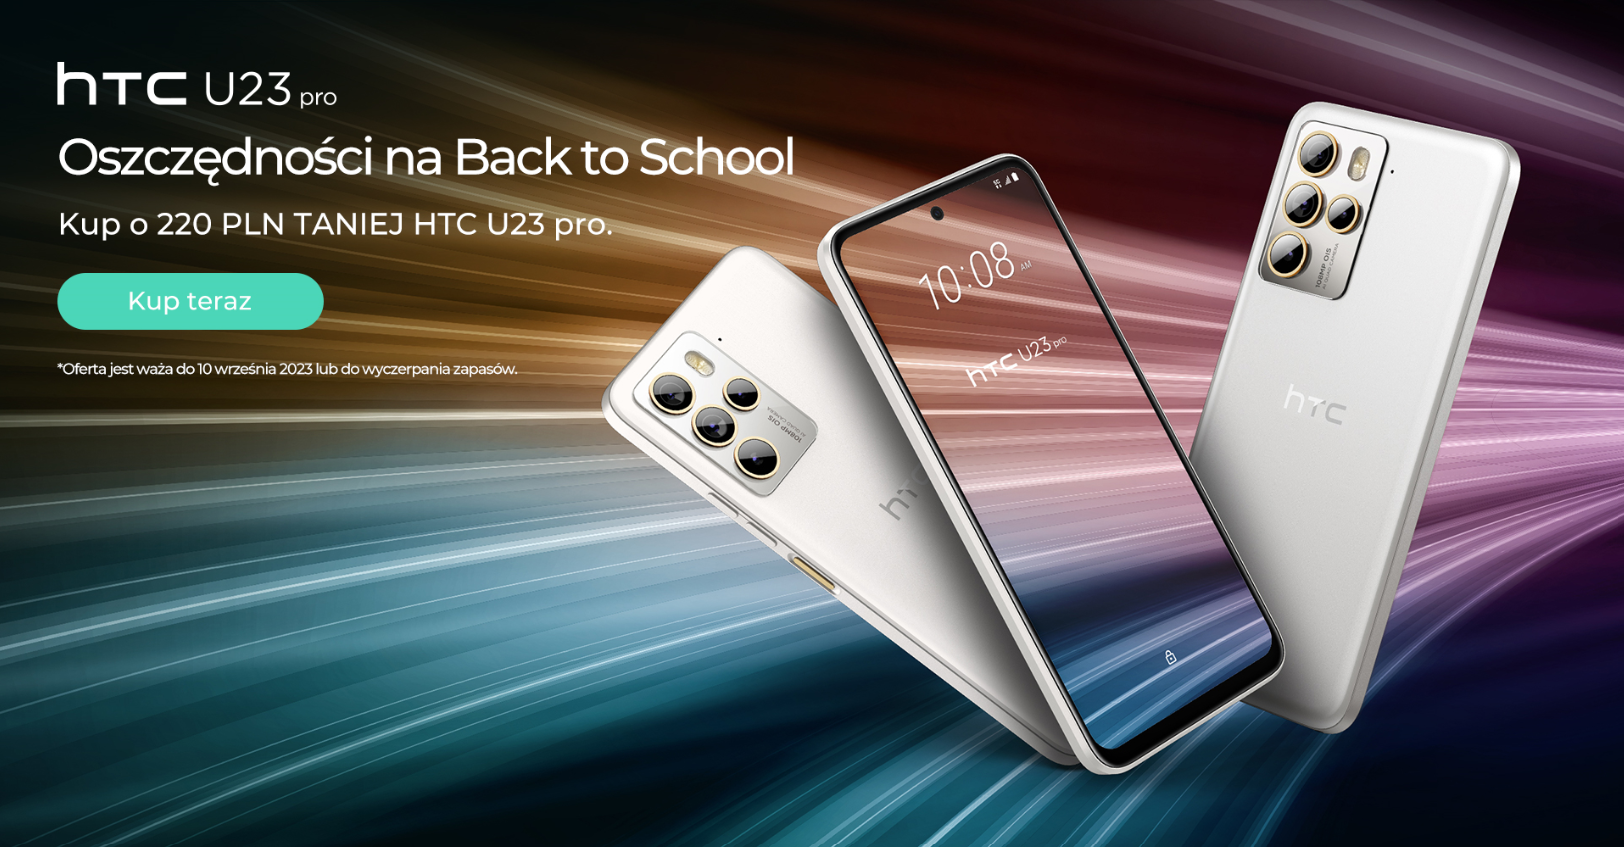 Powrót do szkoły z HTC - VIVE, akcesoria i smartfon na promocji